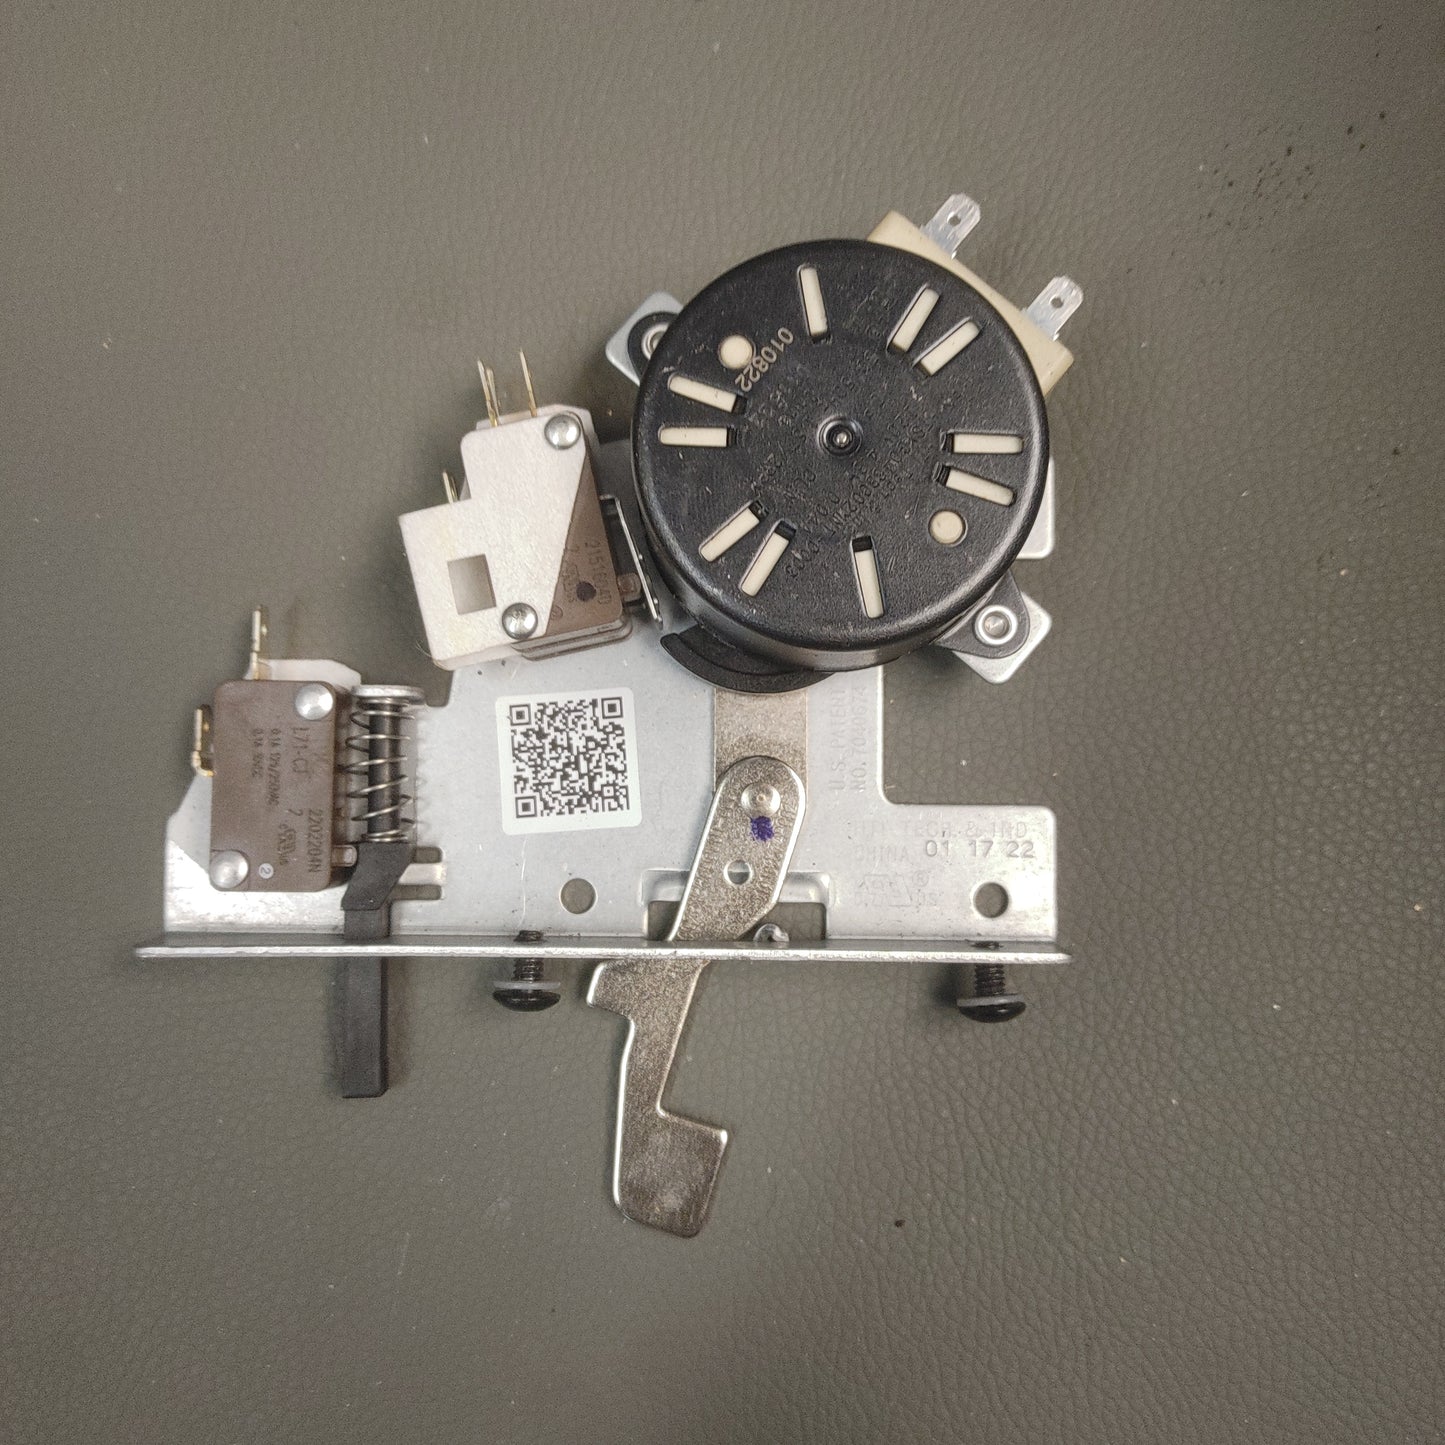 Used GE Range Door Lock from model JS645SL7